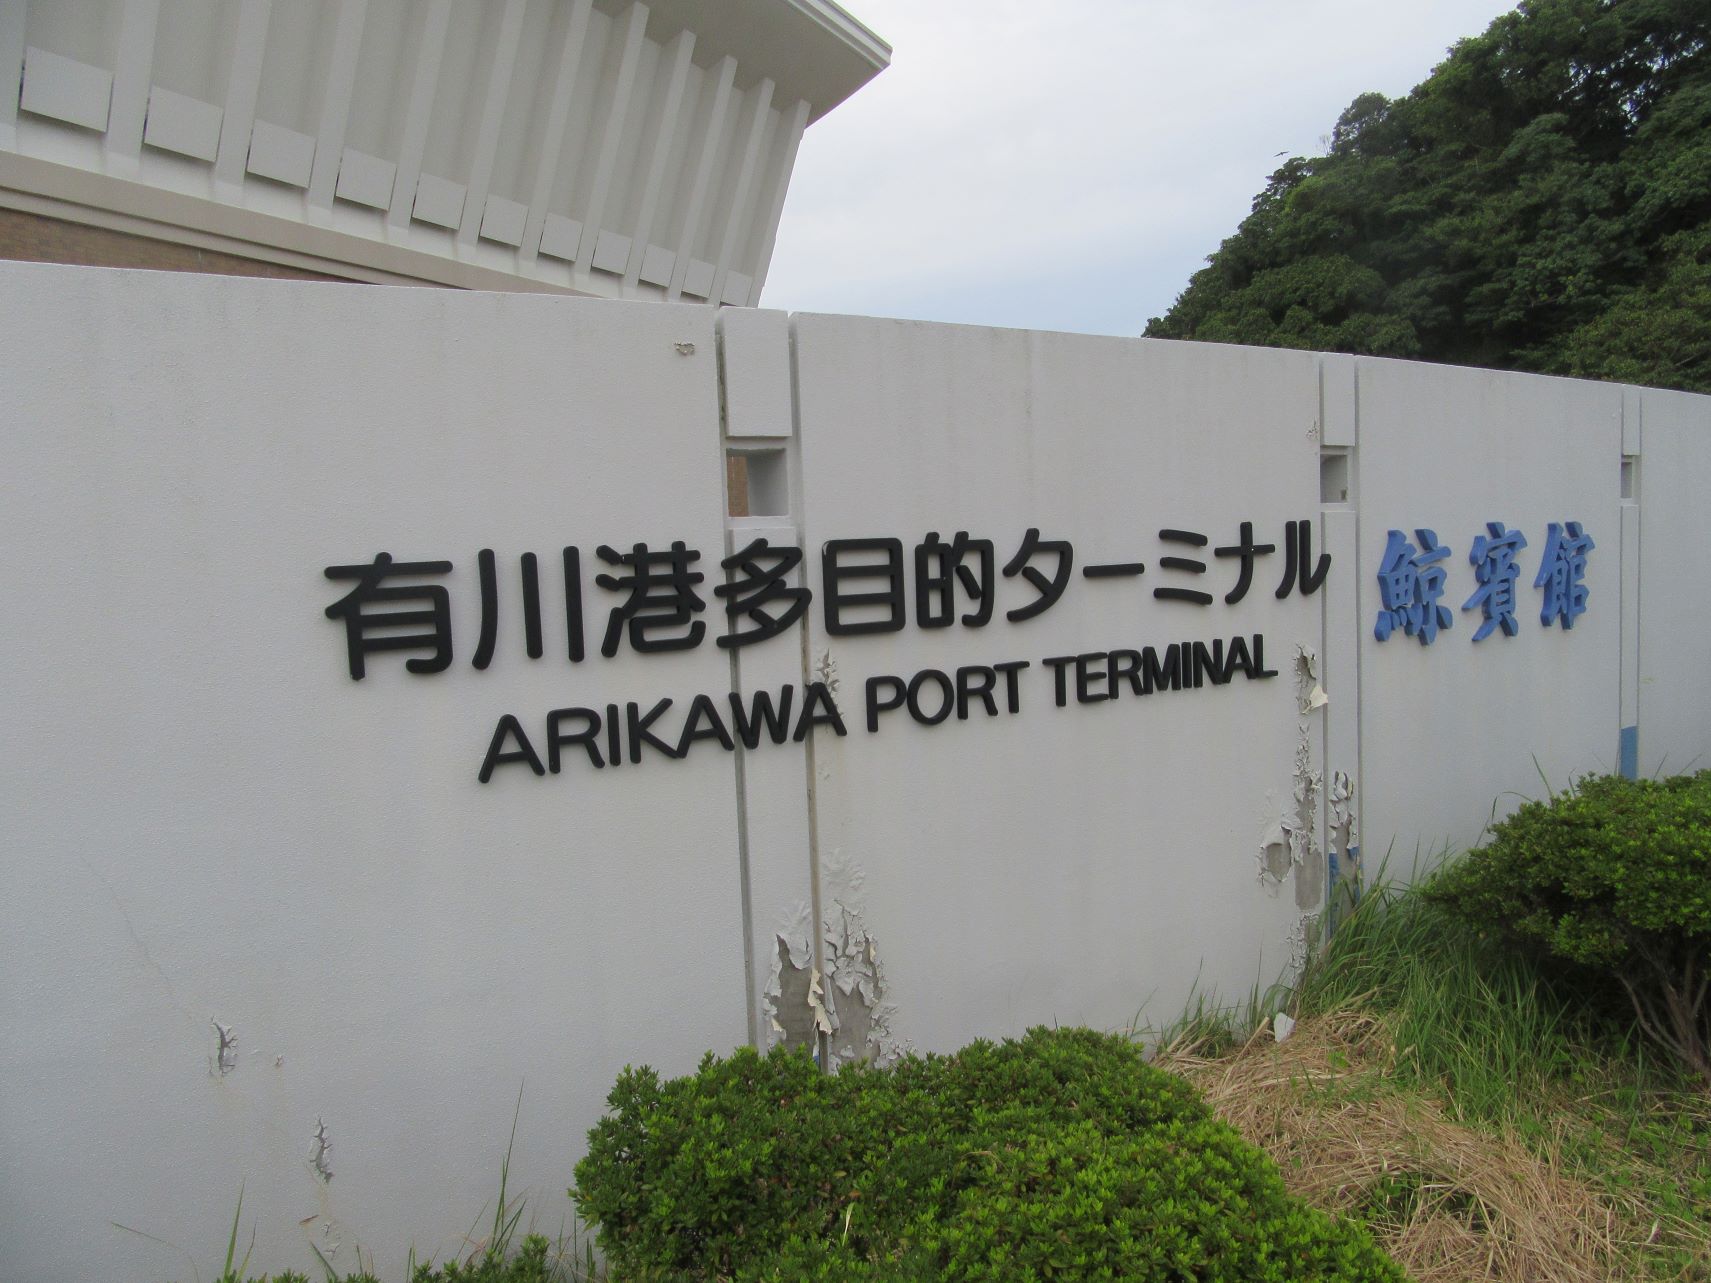 長崎県南松浦郡新上五島町の有川港ターミナルの入口。